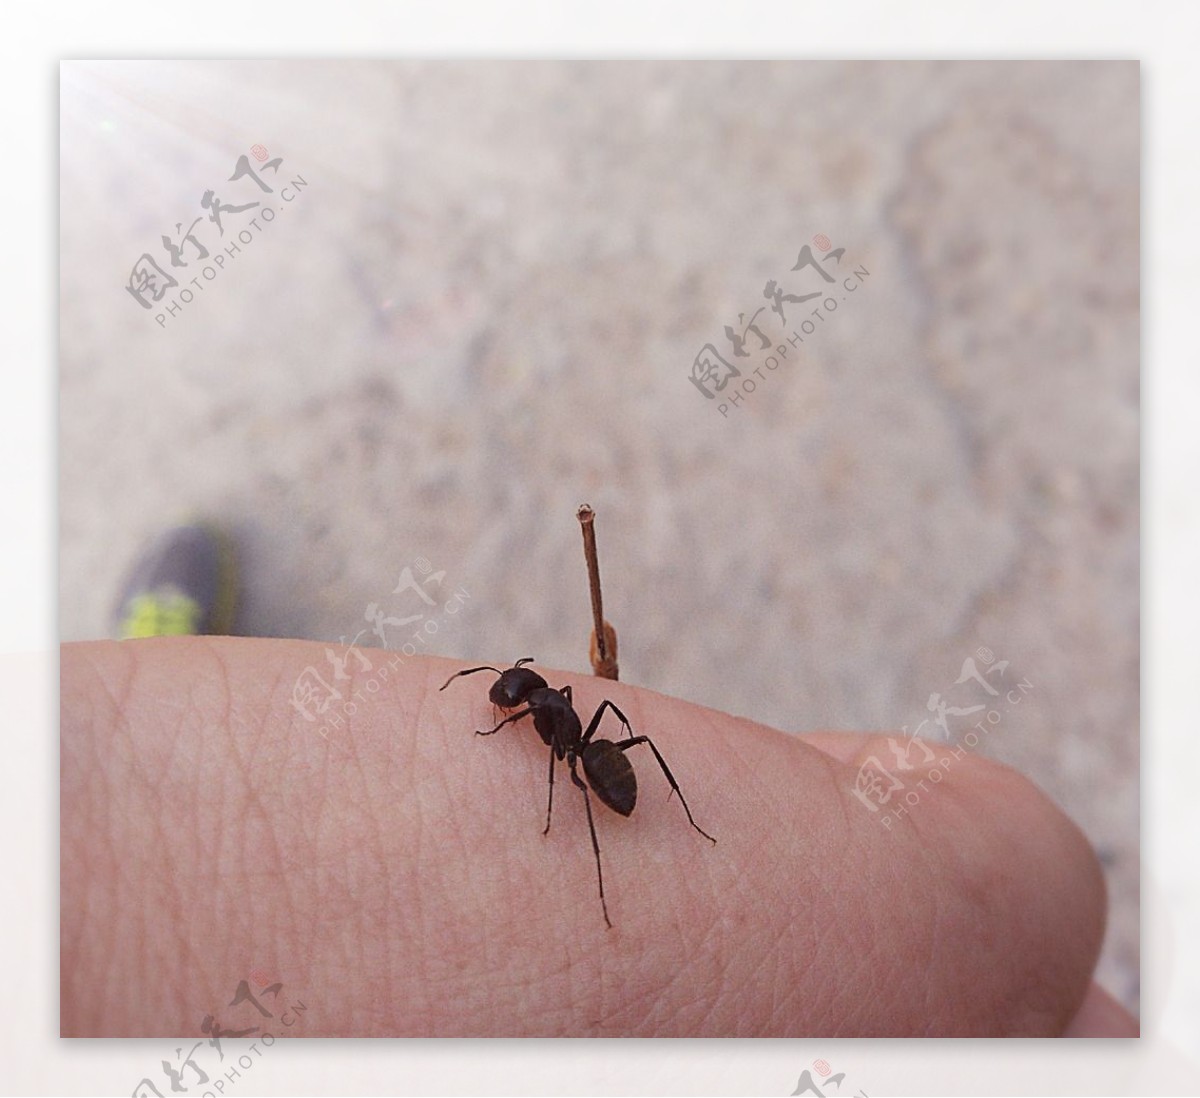 手中的蚂蚁图片